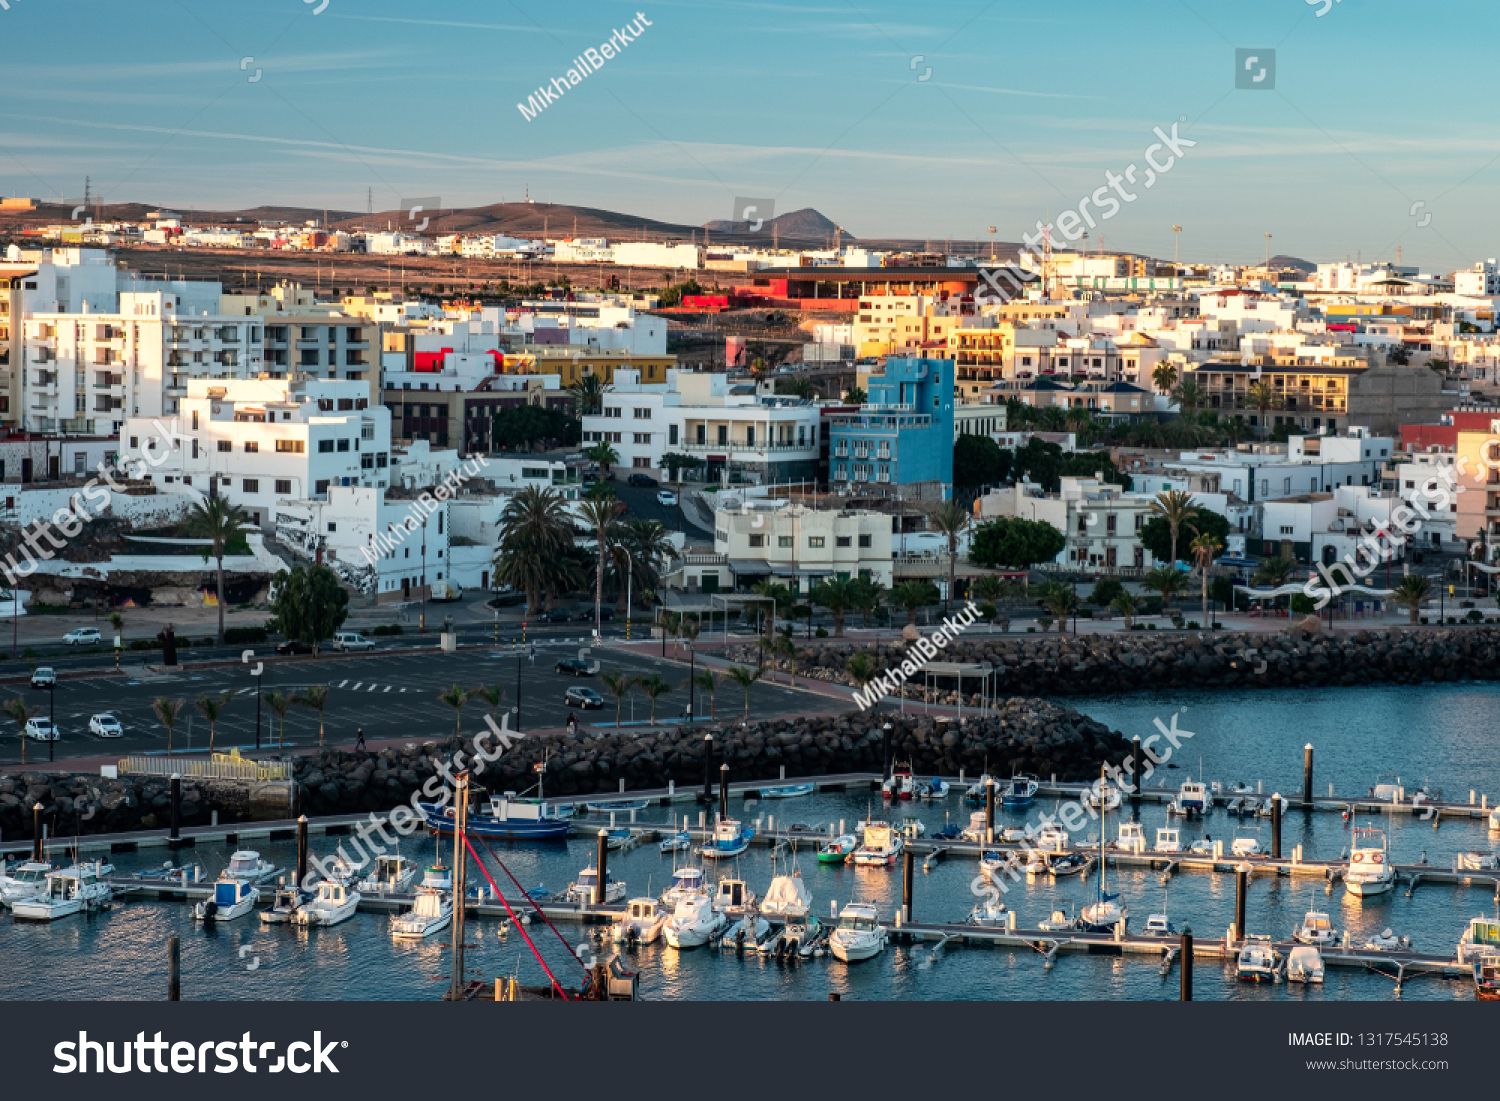 Sinceramente Oswald espalda Top View Port Puerto Del Rosario Stock Photo 1317545138 | Shutterstock